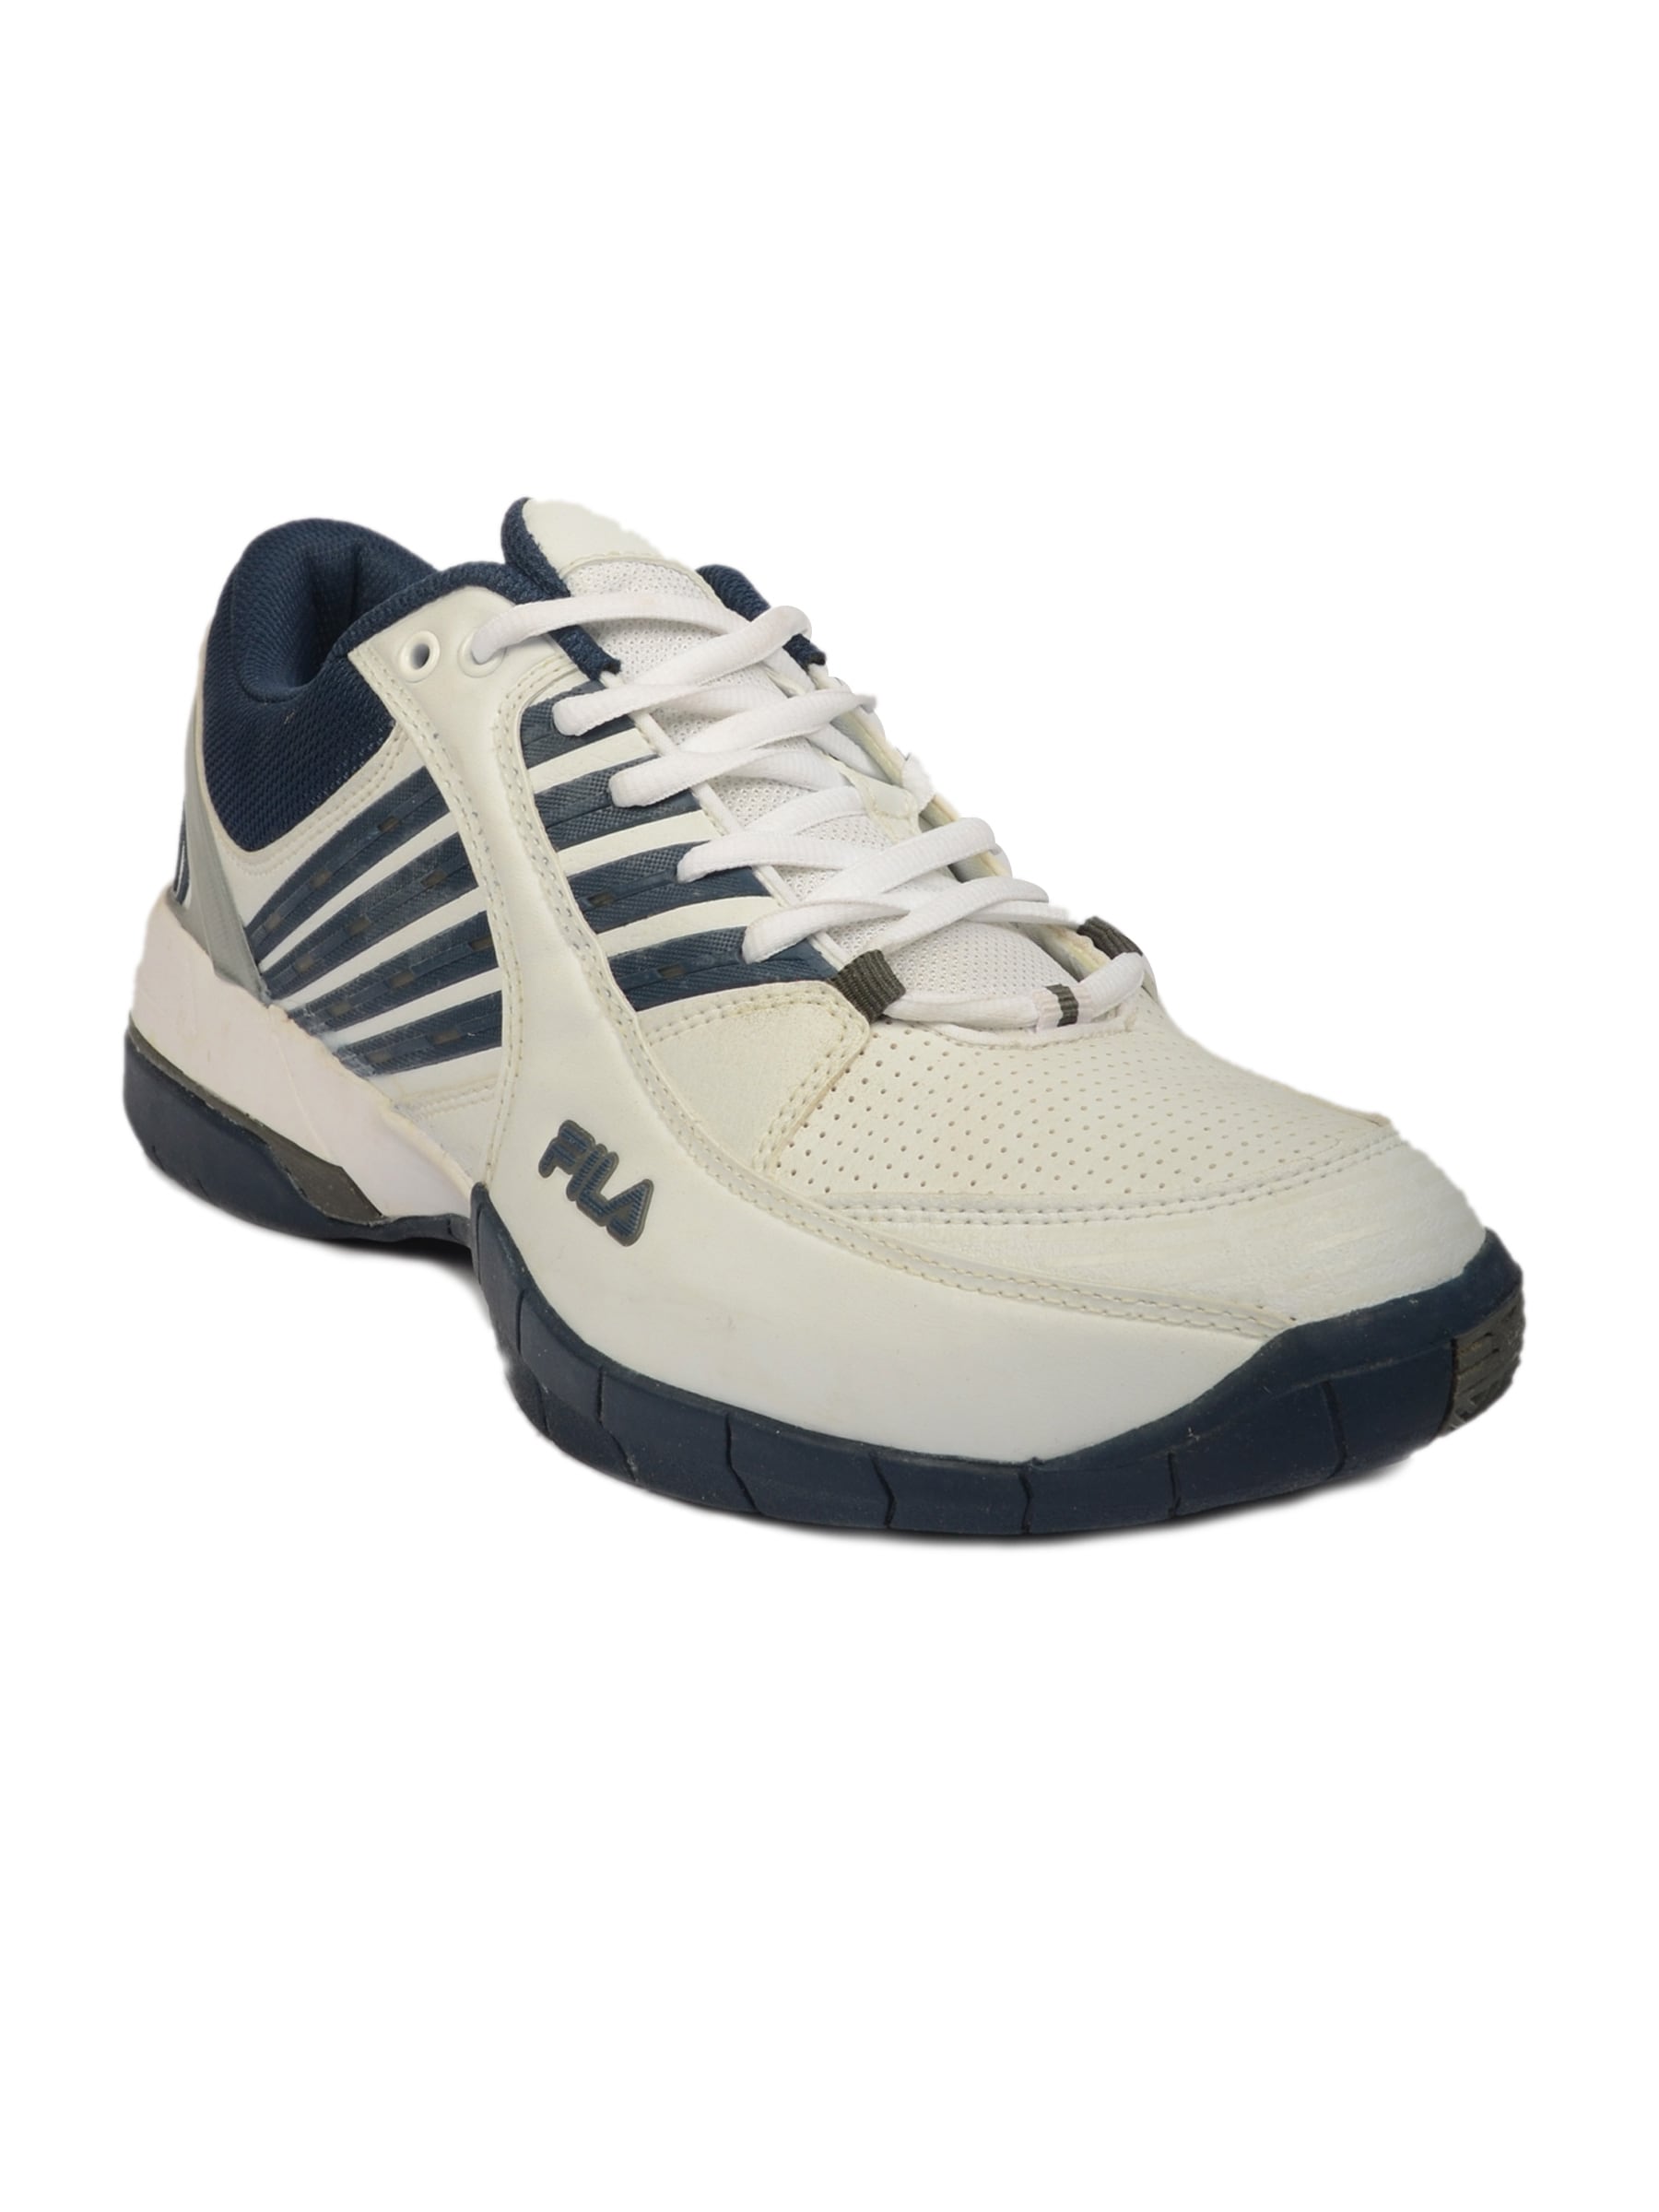 FILA Men Ventaggio White Sports Shoes